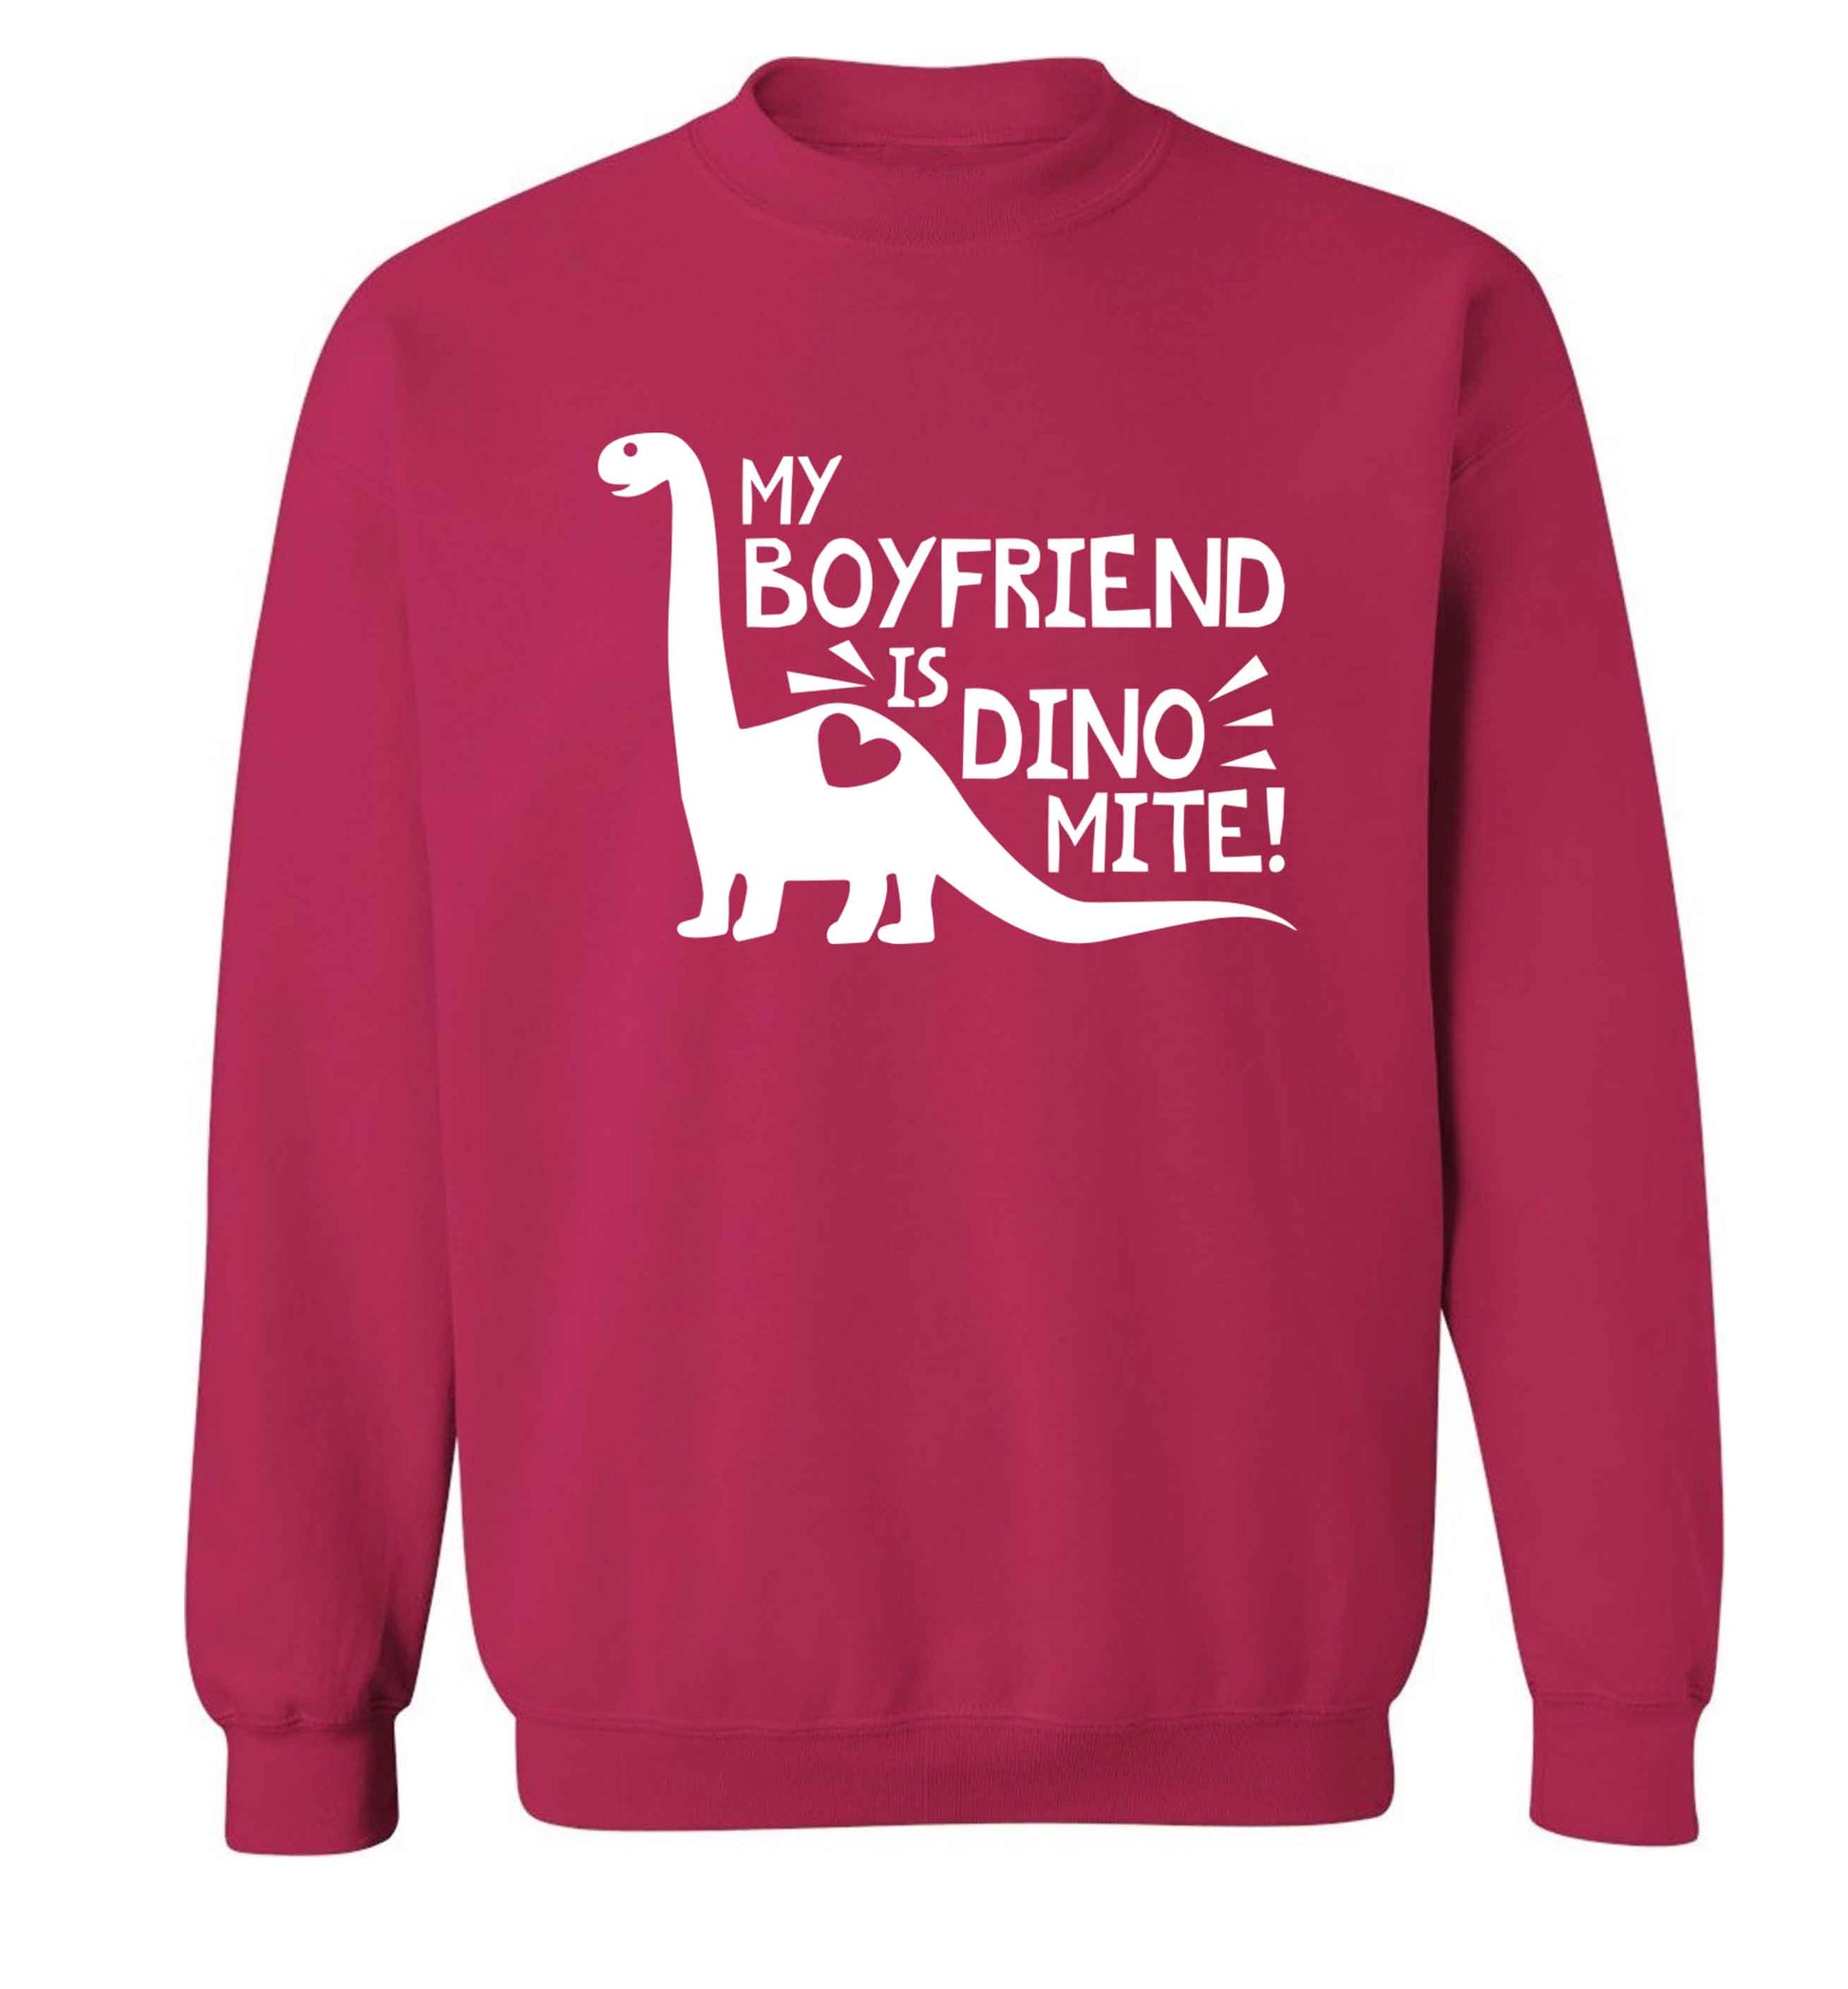 My boyfriend is dinomite! Adult's unisex pink Sweater 2XL